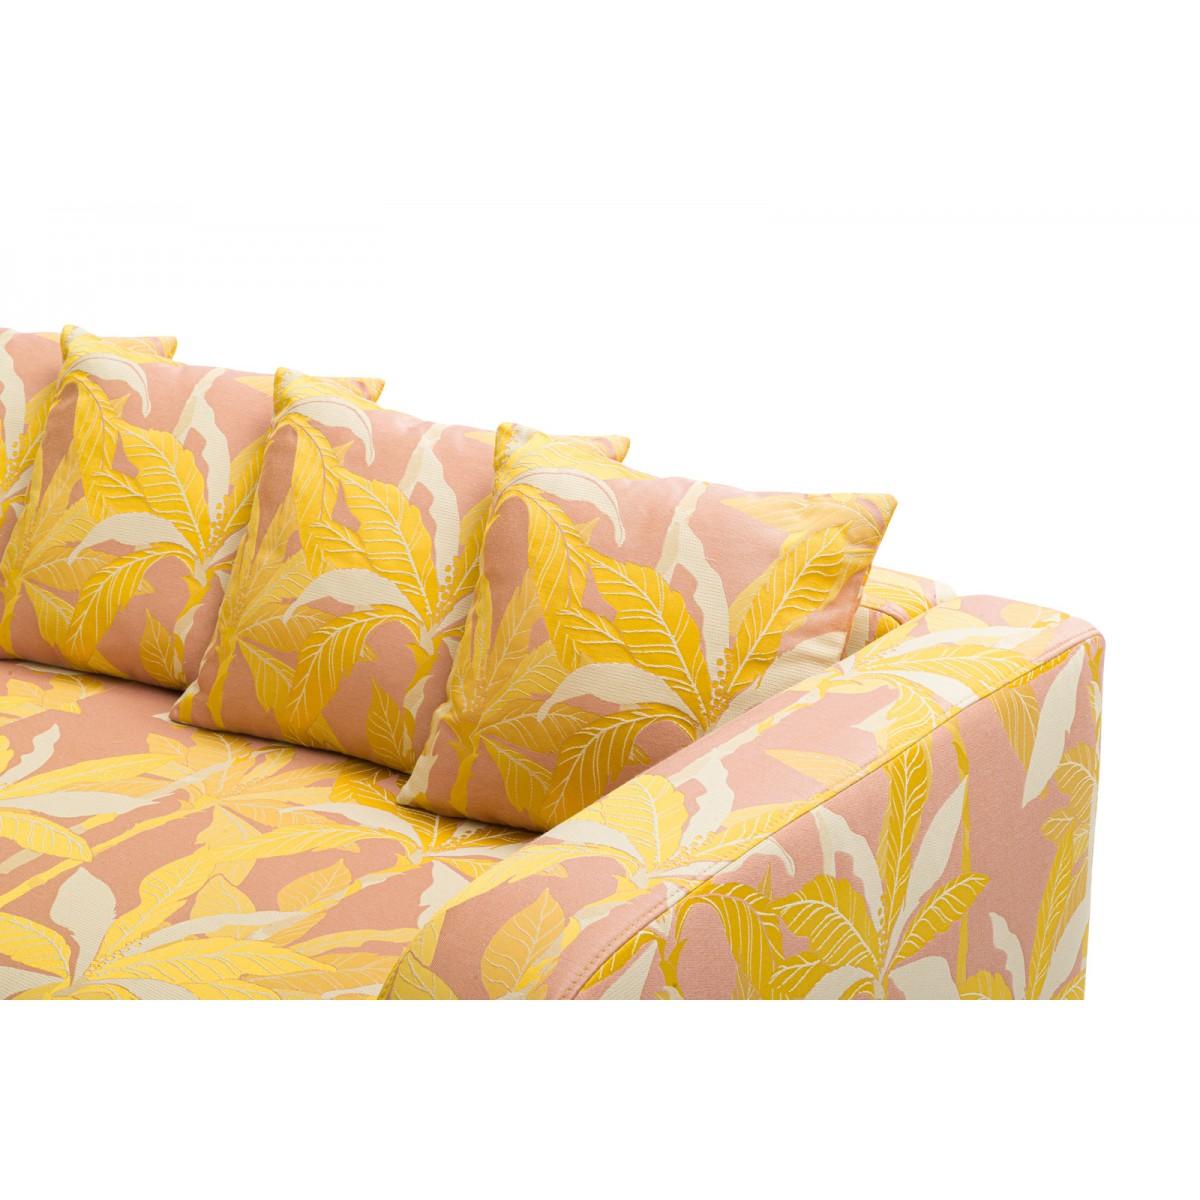 Popus Editions Graziella 3 Seater Sofa in Pink Miami Jacquard Fabric For Sale 1